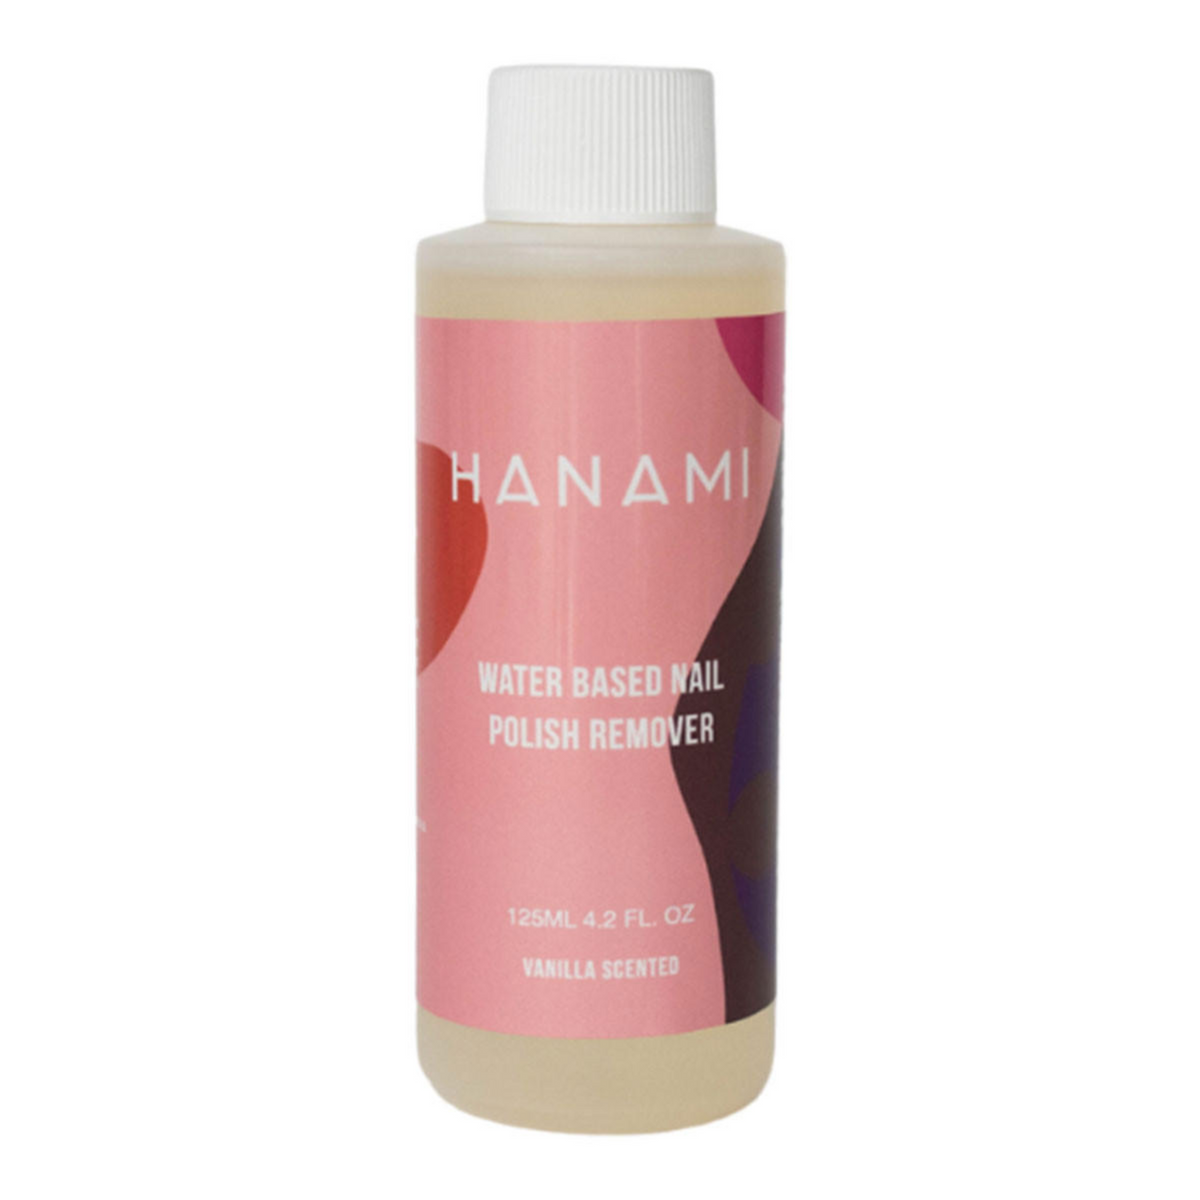 Hanami - Water Based Nail Polish Remover 125ml (french vanilla)